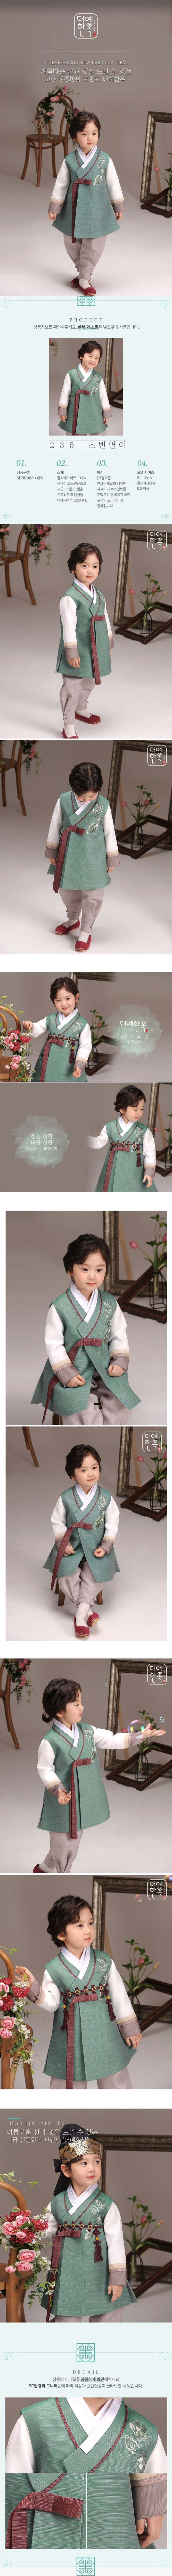 Boy's Hanbok Korea Traditional Clothes Green